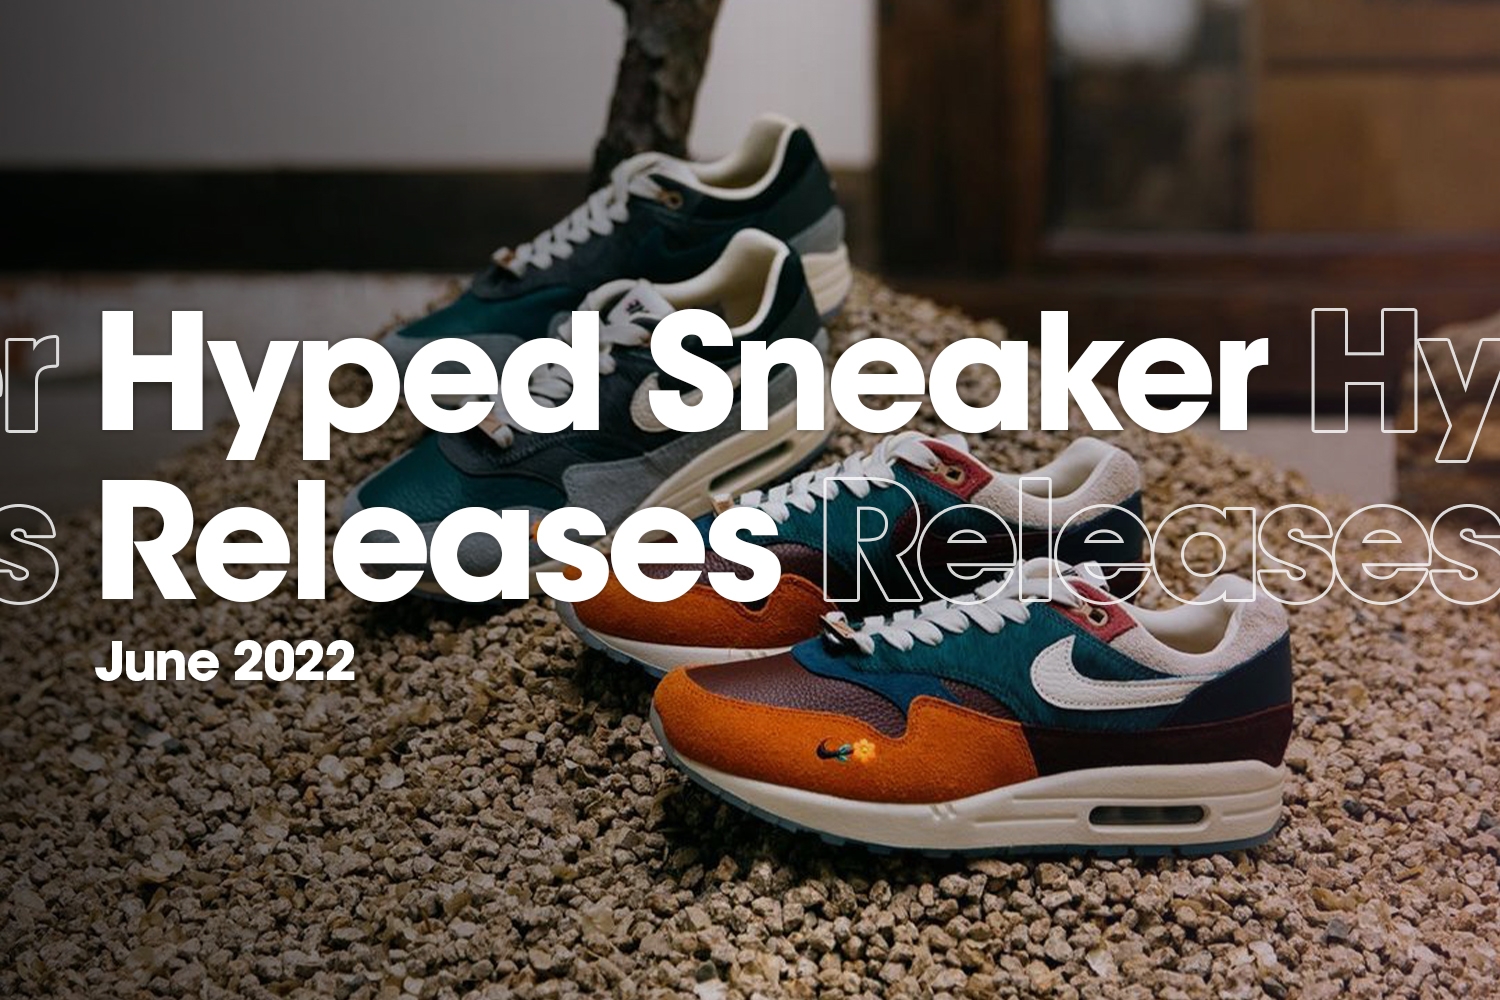 Hyped Sneaker Releases van juni 2022